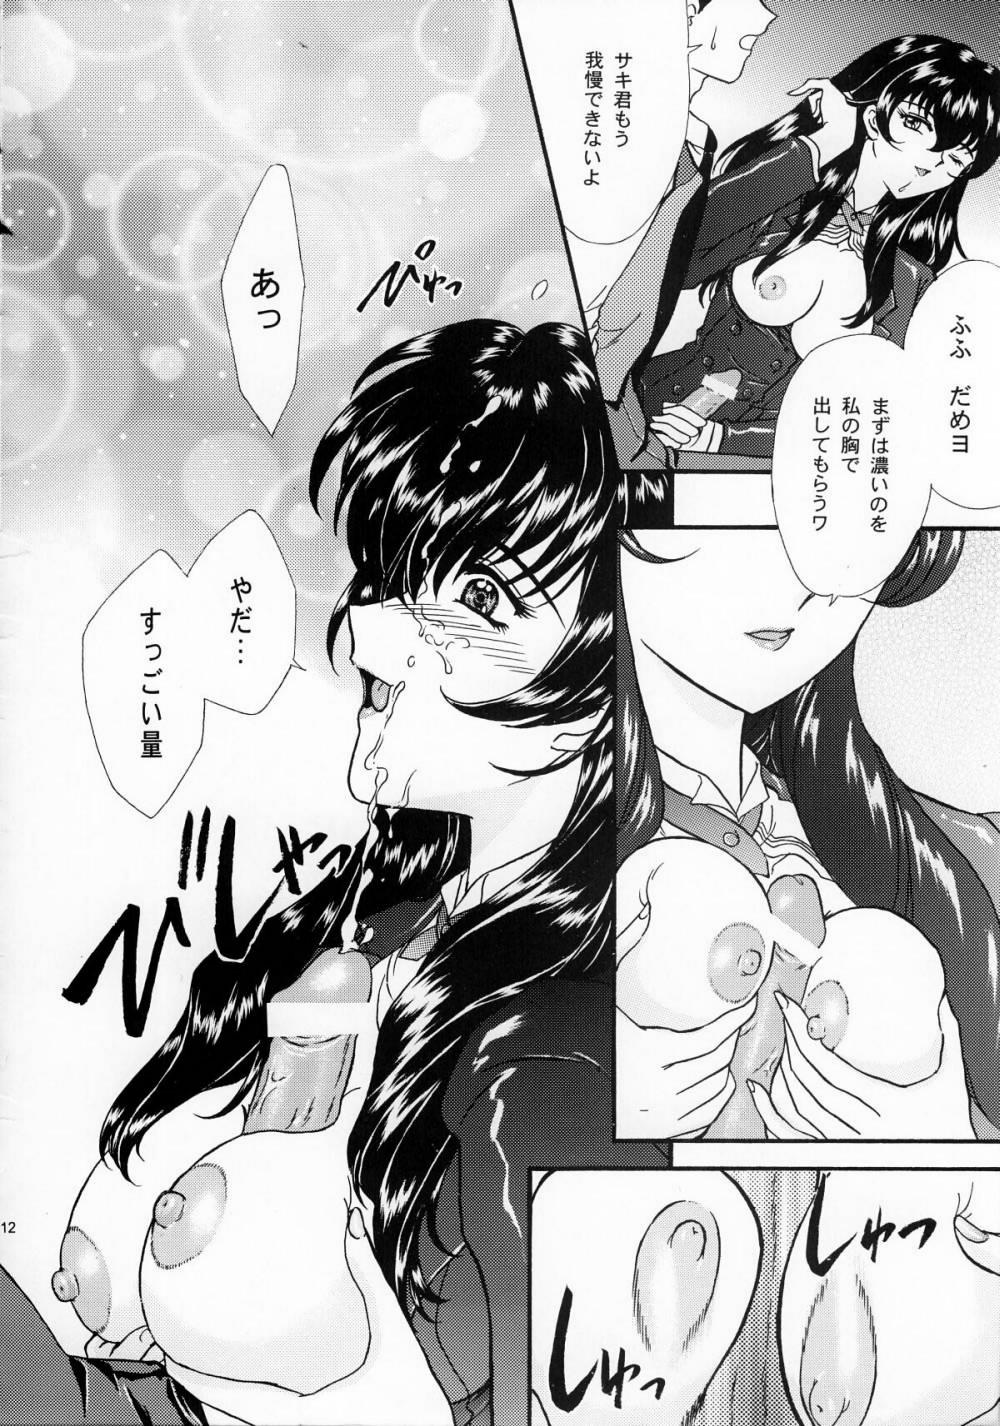 Blowjob [TSK] Mai Hime ~Karen~ 1 Ichigo Ichie (Sakura Wars) - Sakura taisen Hotporn - Page 11